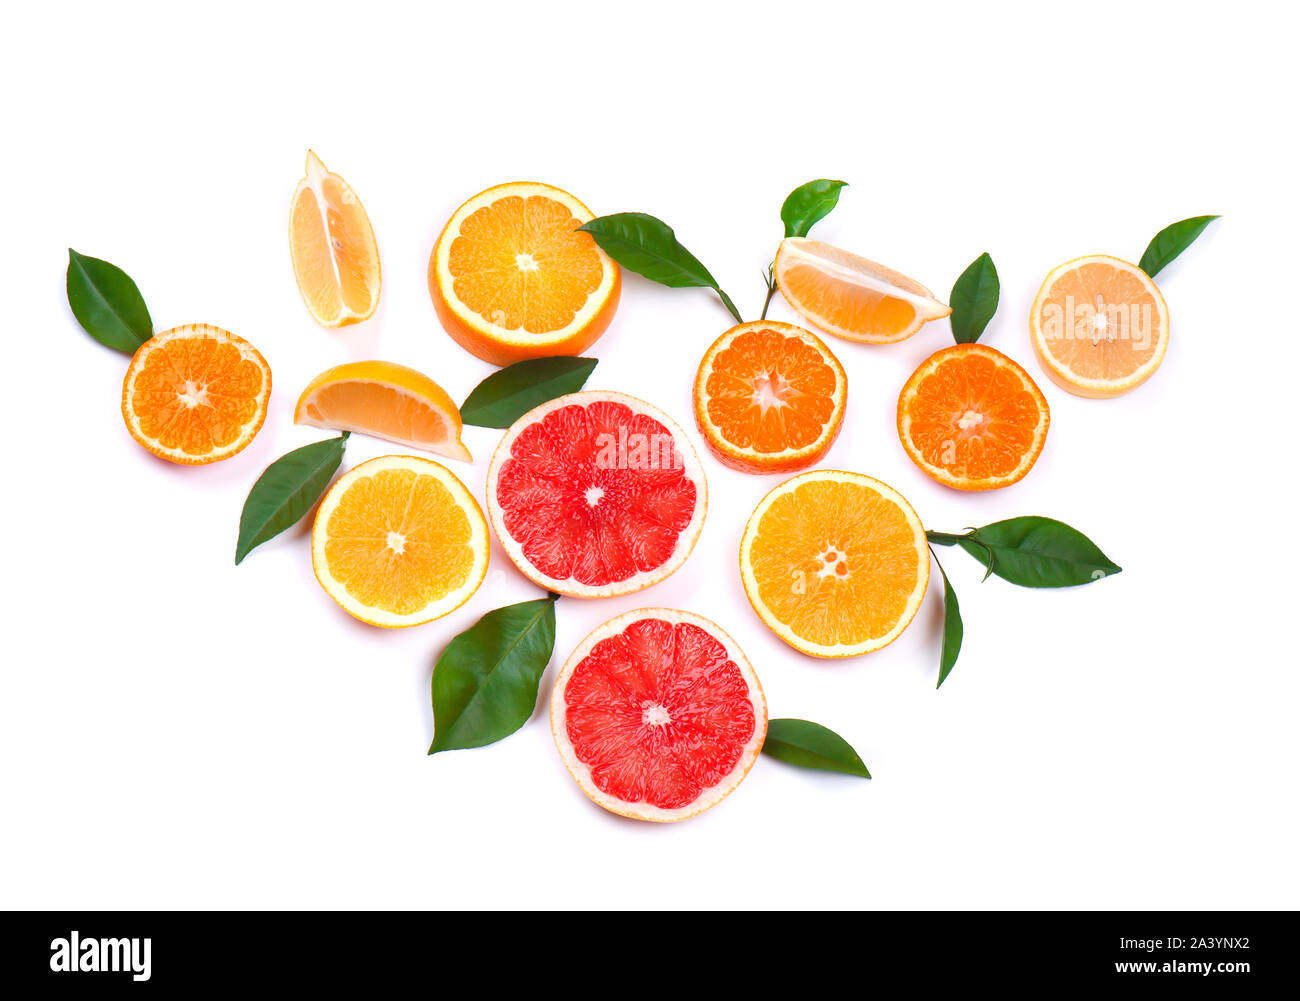 Agrumi isolati su sfondo bianco. Isolato di agrumi. Pezzi di limone, pompelmo rosa e arancio isolato su sfondo bianco, con Foto Stock